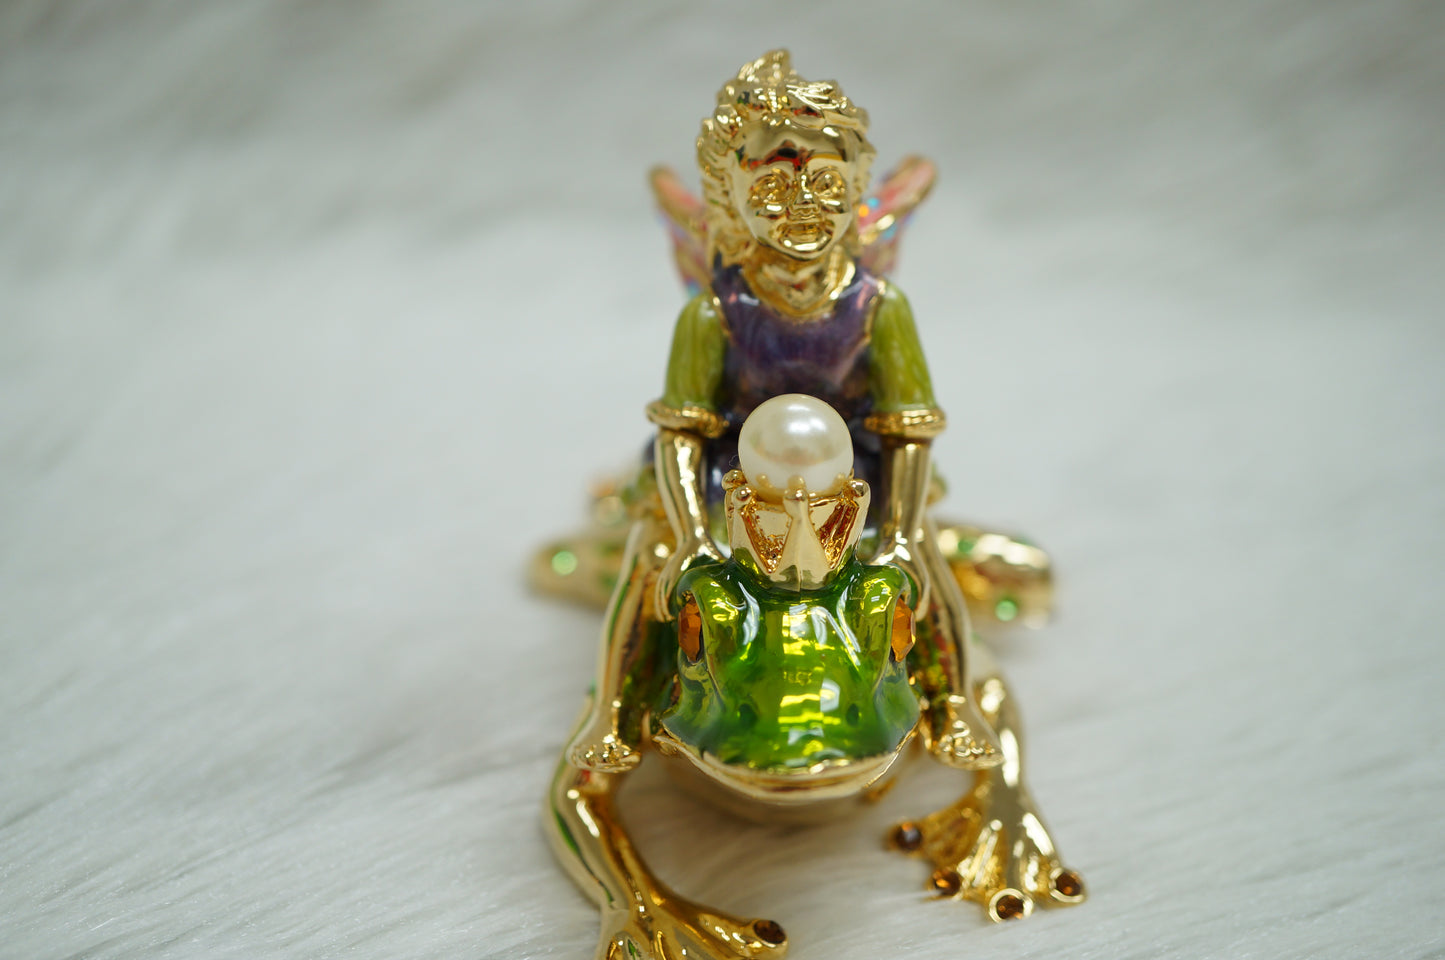 Cristiani Collezione Girl Fairy on Frog Trinket Box.